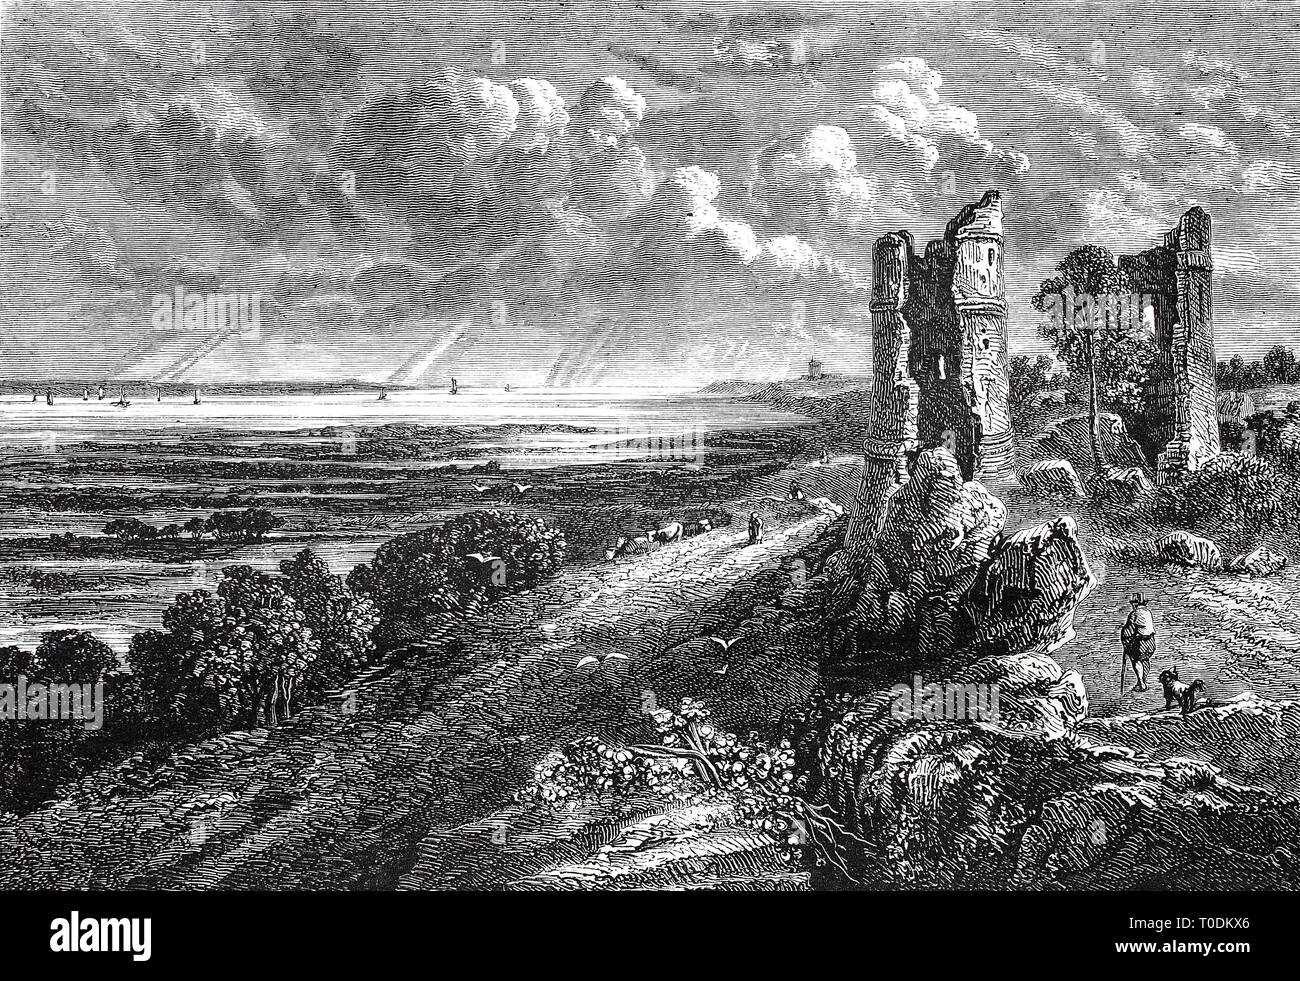 Digital verbesserte Reproduktion, Landschaft am Meer mit einer Burgruine, Hadleigh Castle ist eine Burgruine auf einem Hügel oberhalb der Mündung der Themse südlich der Stadt hadleigh in der englischen Grafschaft Essex, nach einem Gemälde von John Constable, original woodprint Th 19. Stockfoto